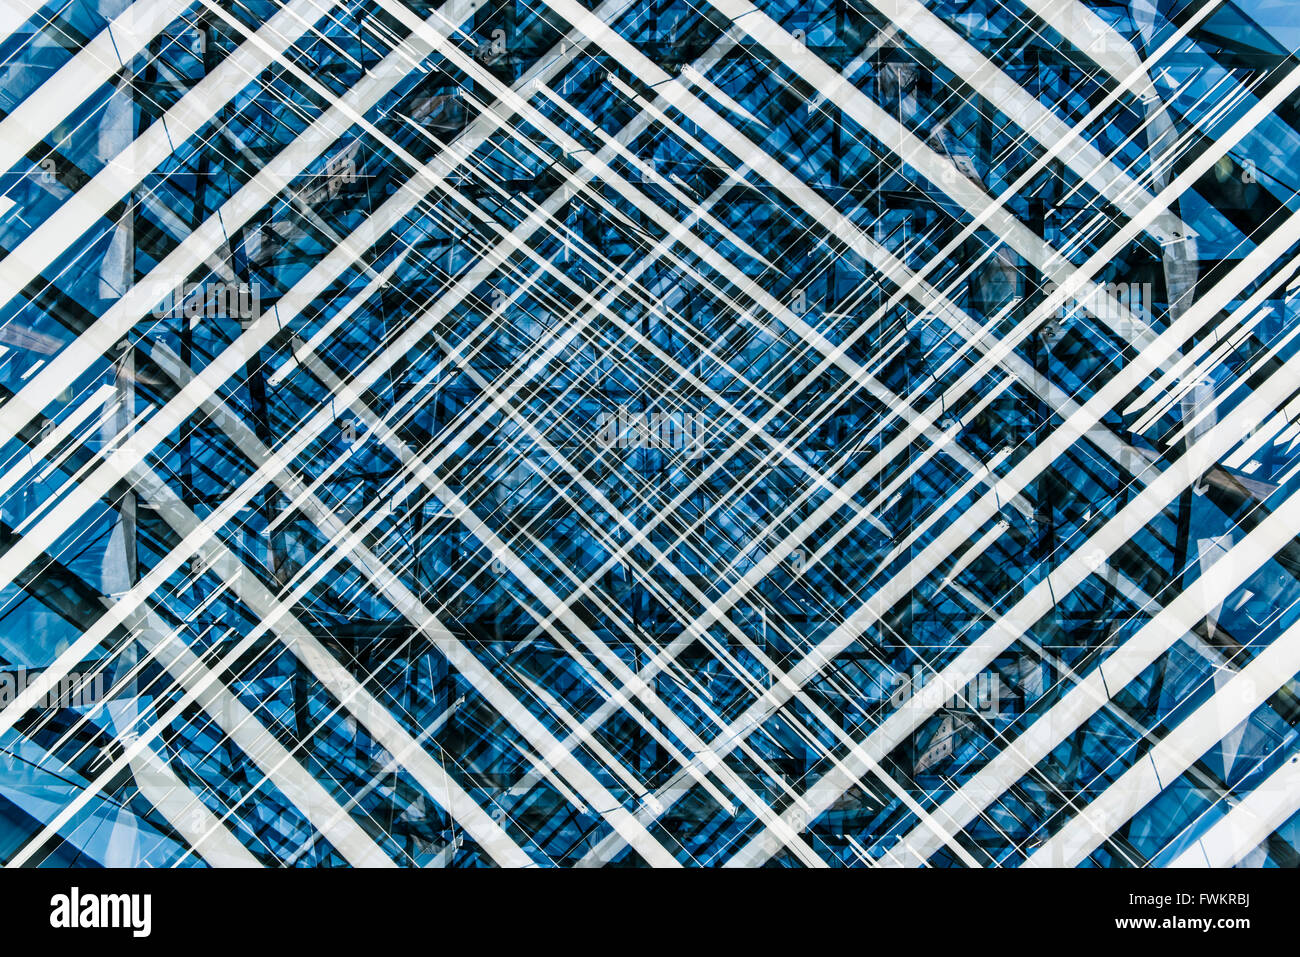 Blau, Schwarz und Weiß abstraktes Muster erstellt mit mehreren Aufnahmen eines architektonischen Details. Stockfoto